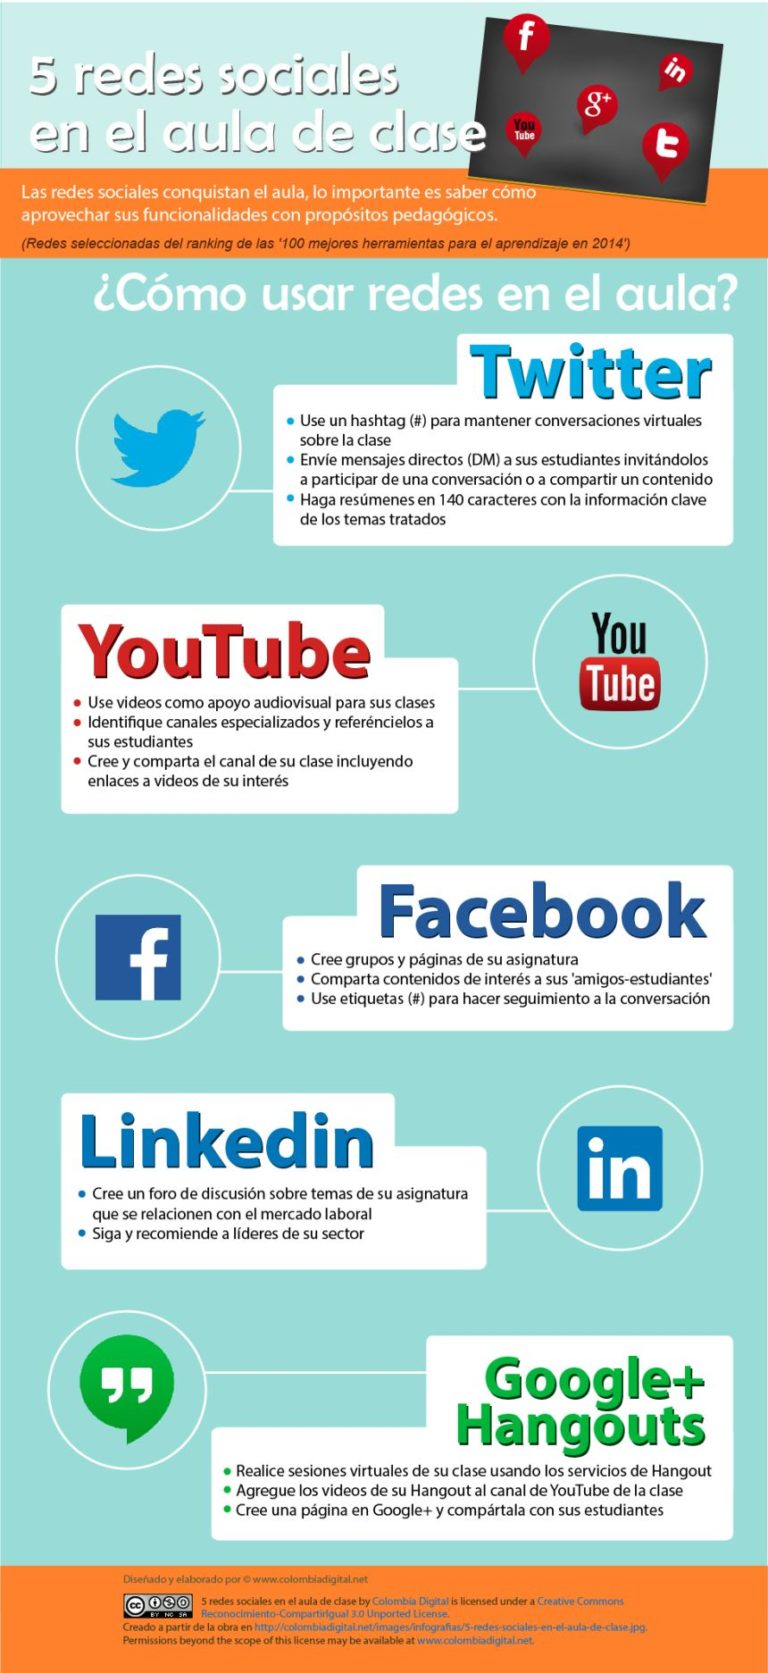 Infografia - 8 beneficios de usar las redes sociales en educaciÃ³n